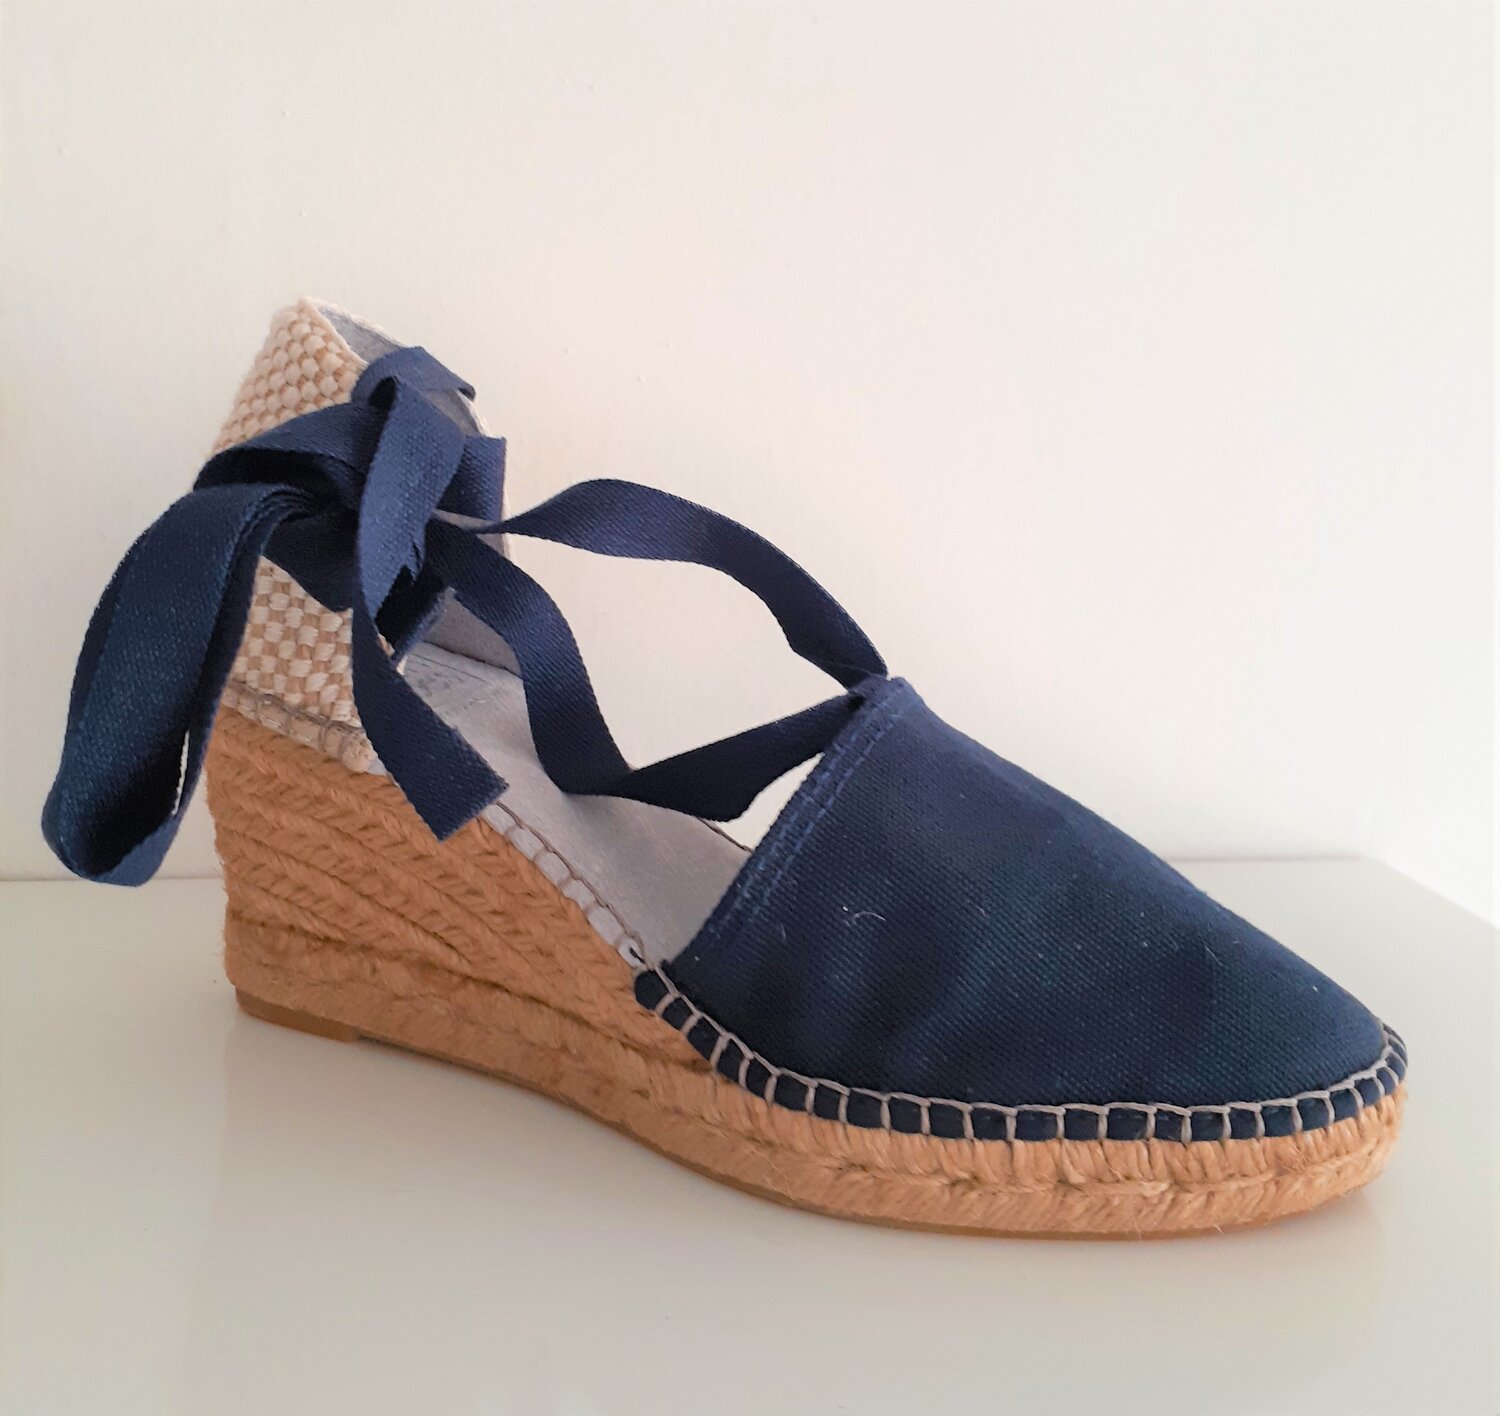 CRUZ'N SHOES Wedge Espadrille Navy Cotton — Cruz'n Shoes by Menorquinas